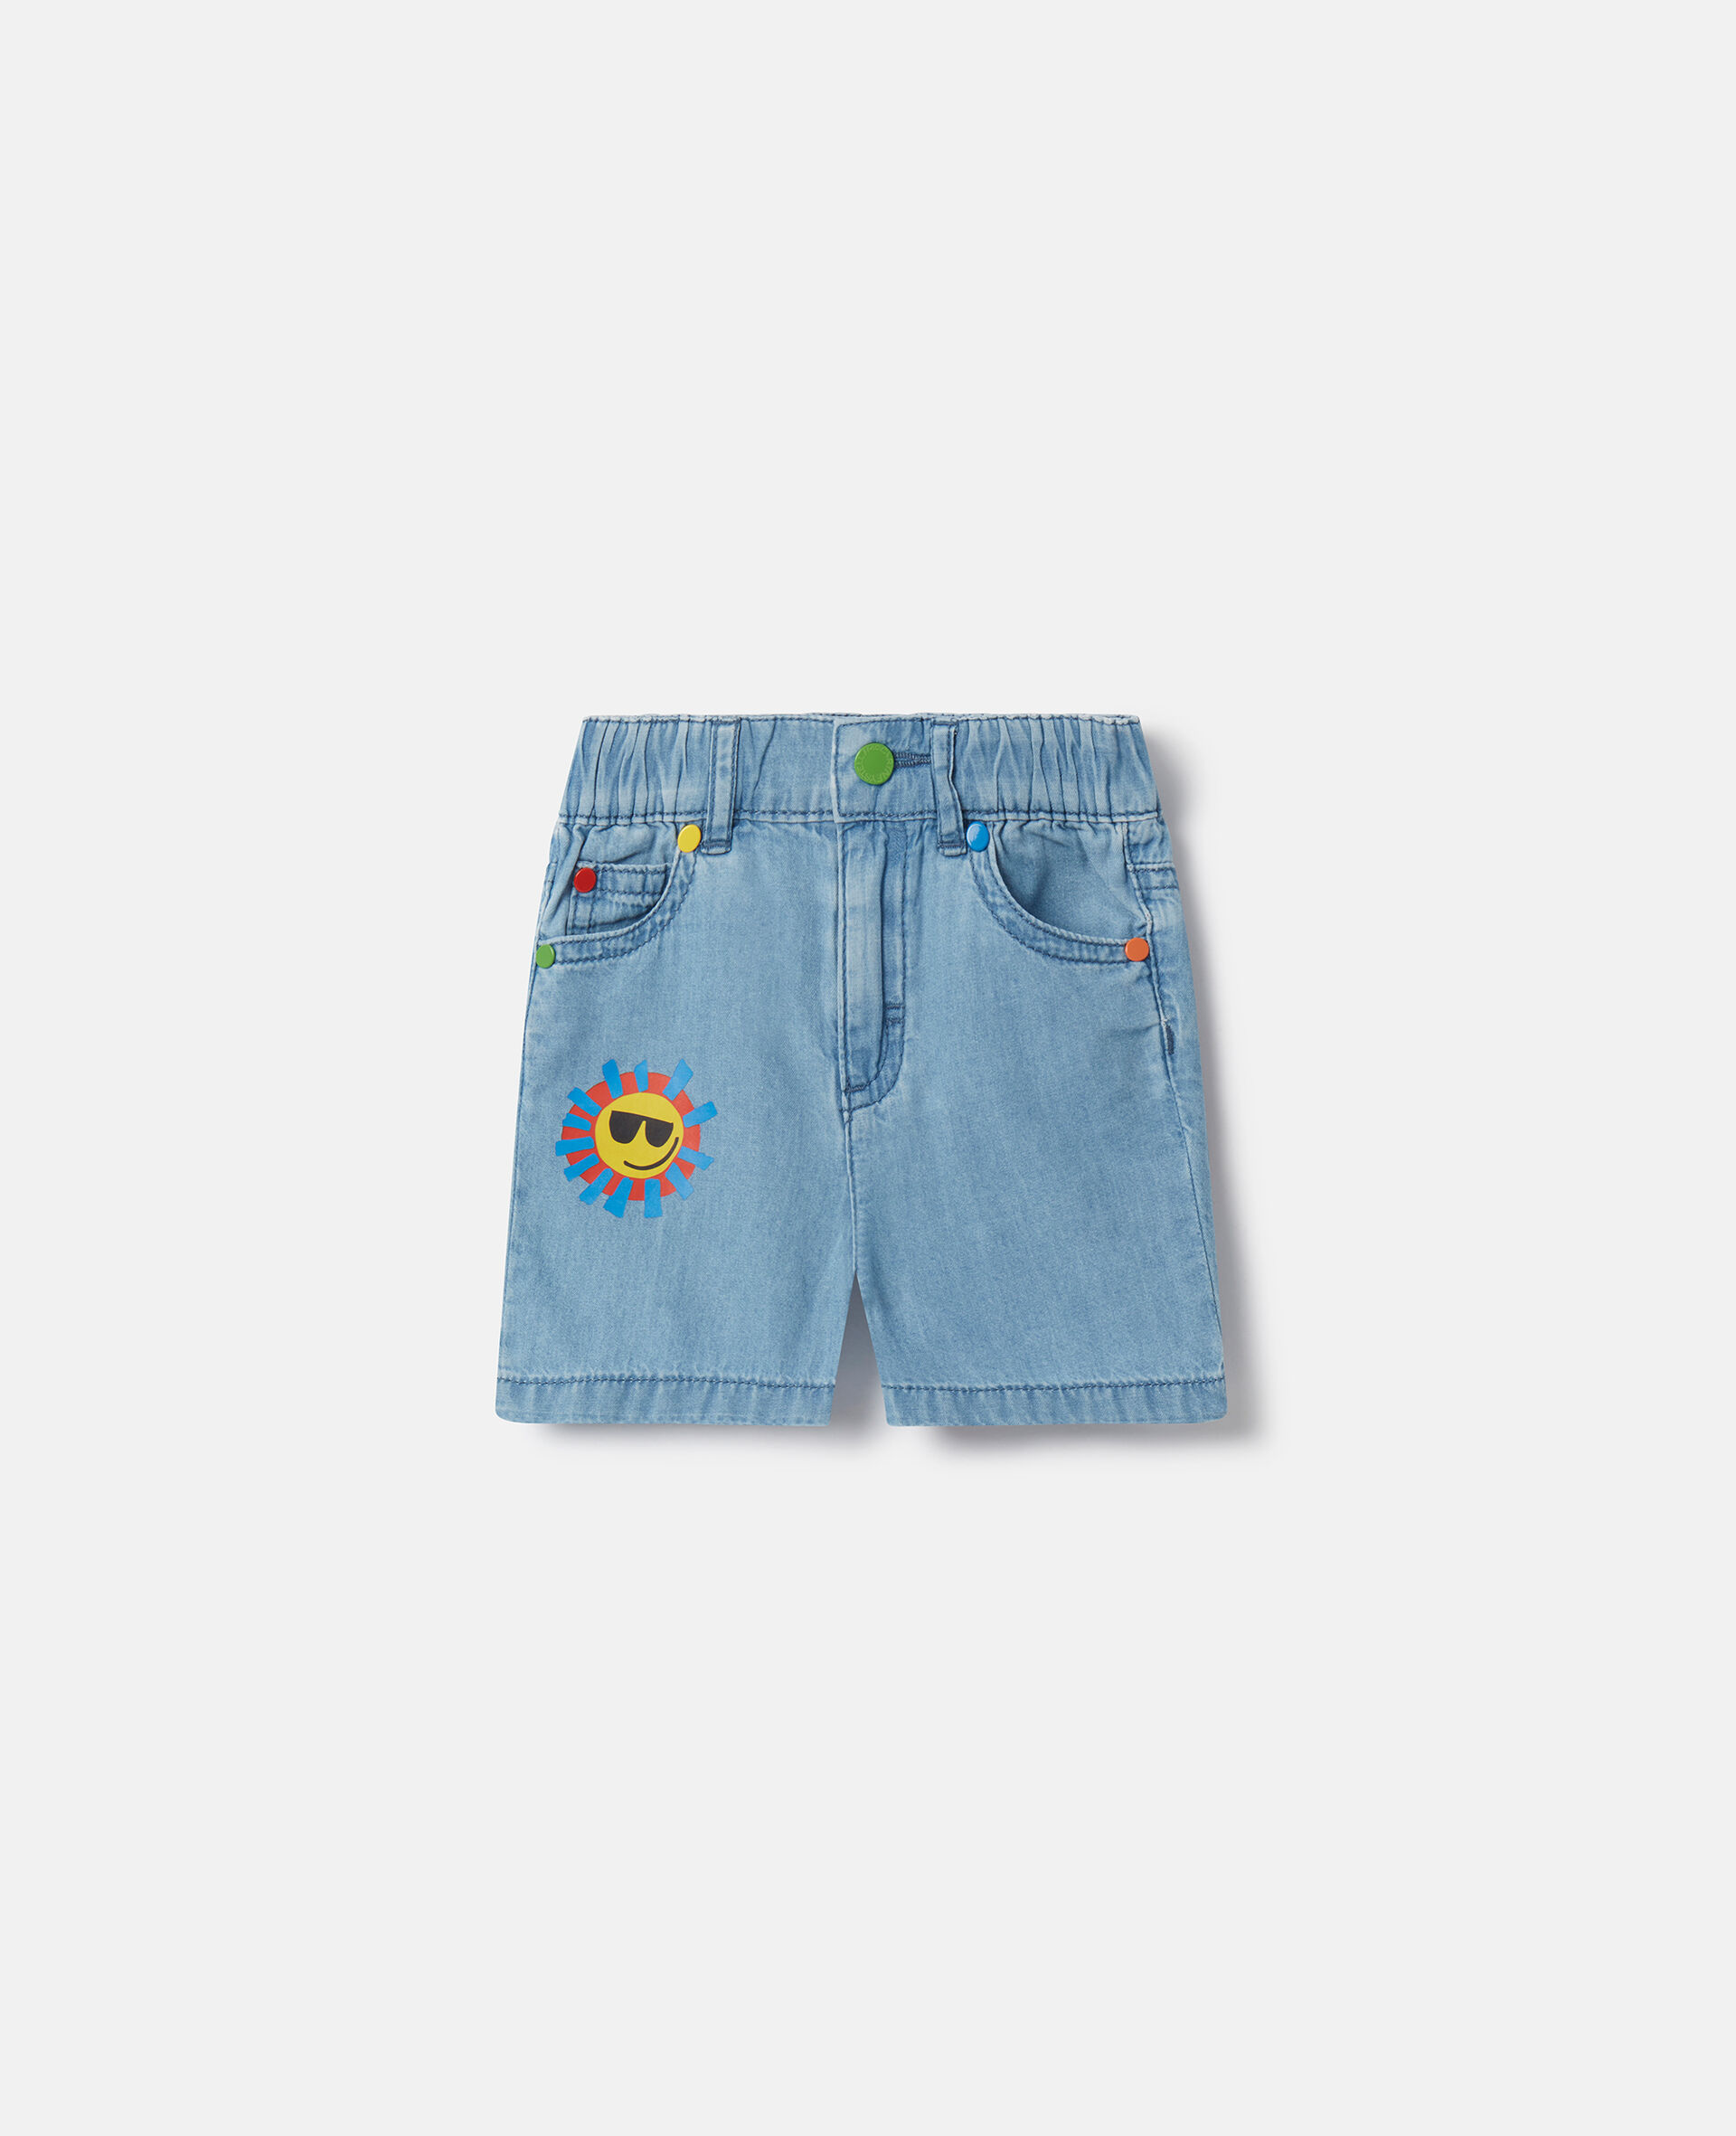 Sunshine Print Denim Shorts-Bleu-medium